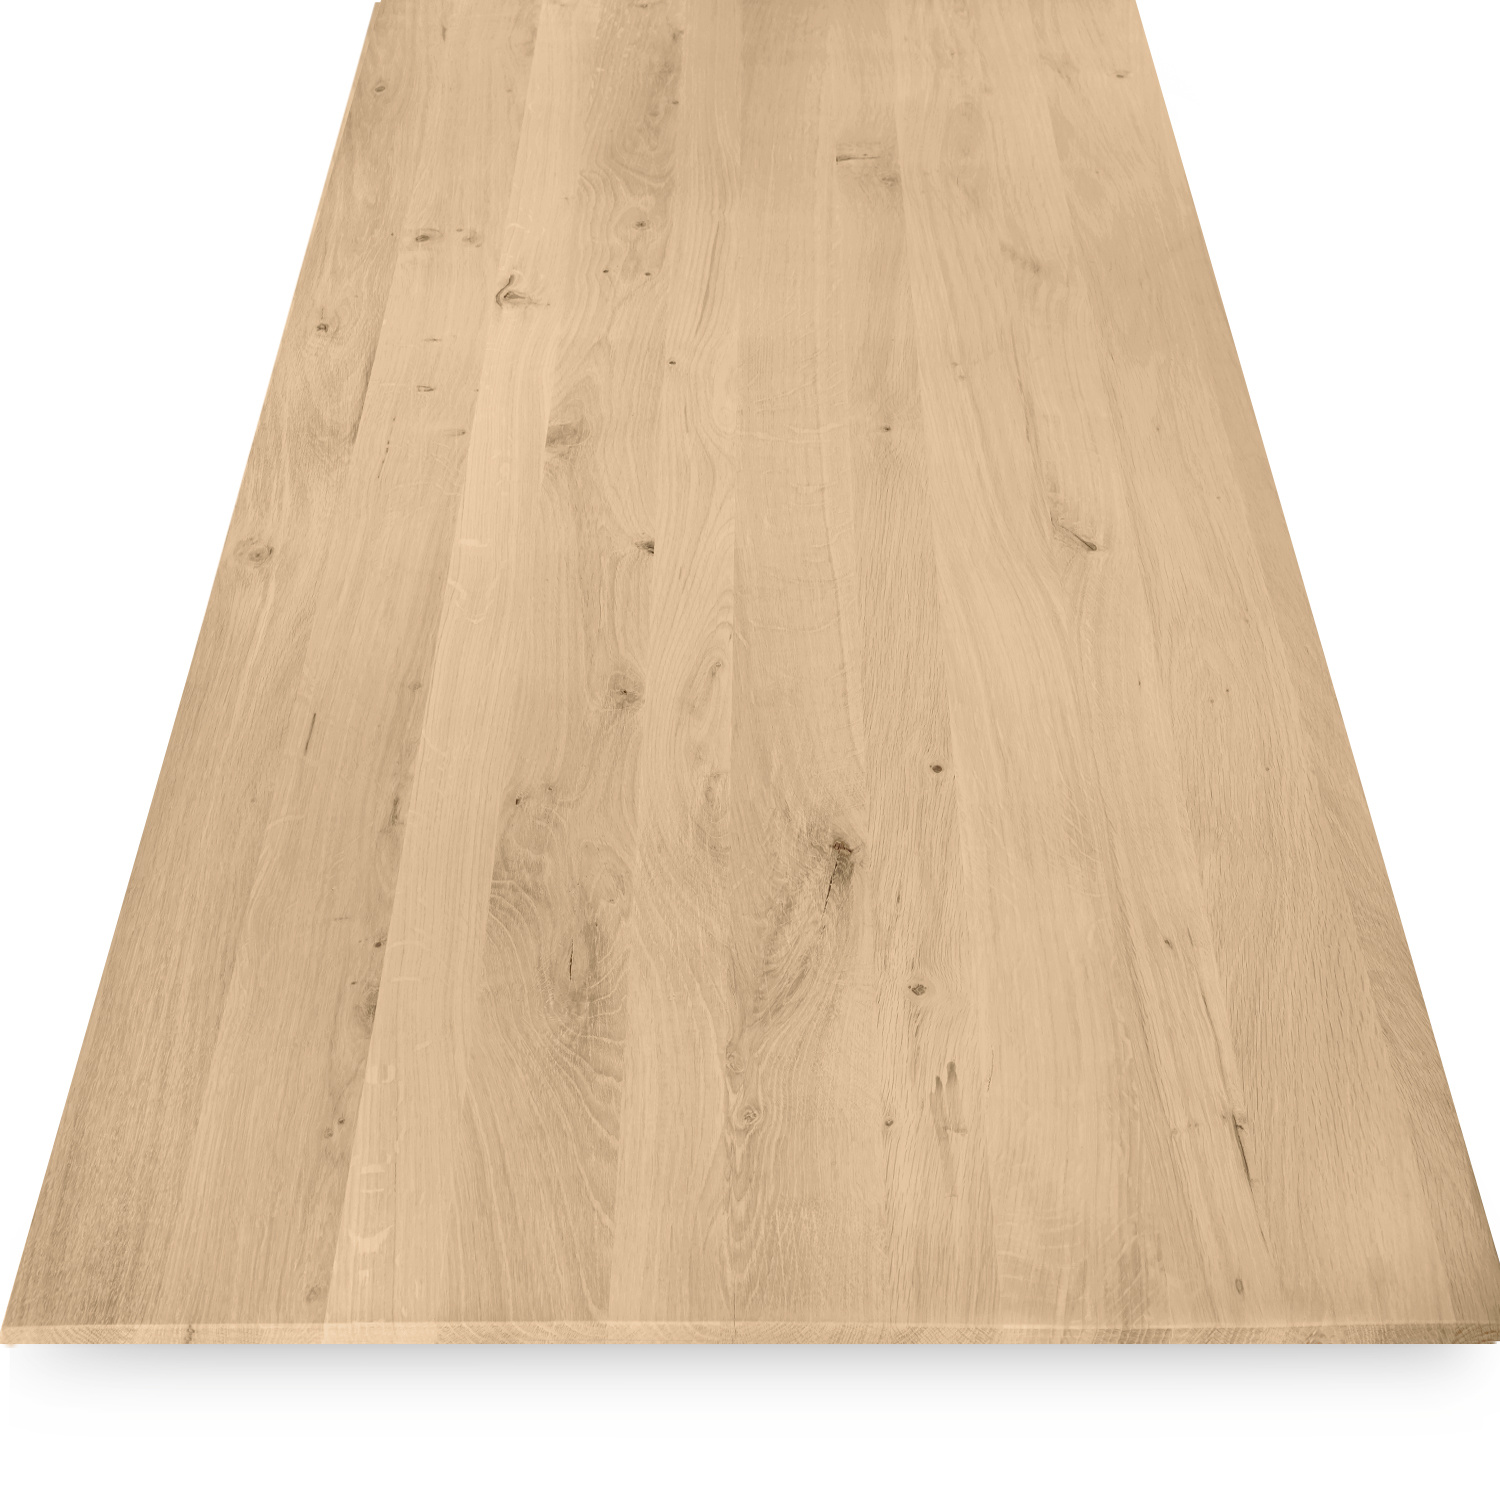  Eiken  tafelblad verjongd - op maat - 4 cm dik (1-laag) - met verjongde rand - rustiek Europees eikenhout - verlijmd kd 8-12% - 50-120x50-350 cm